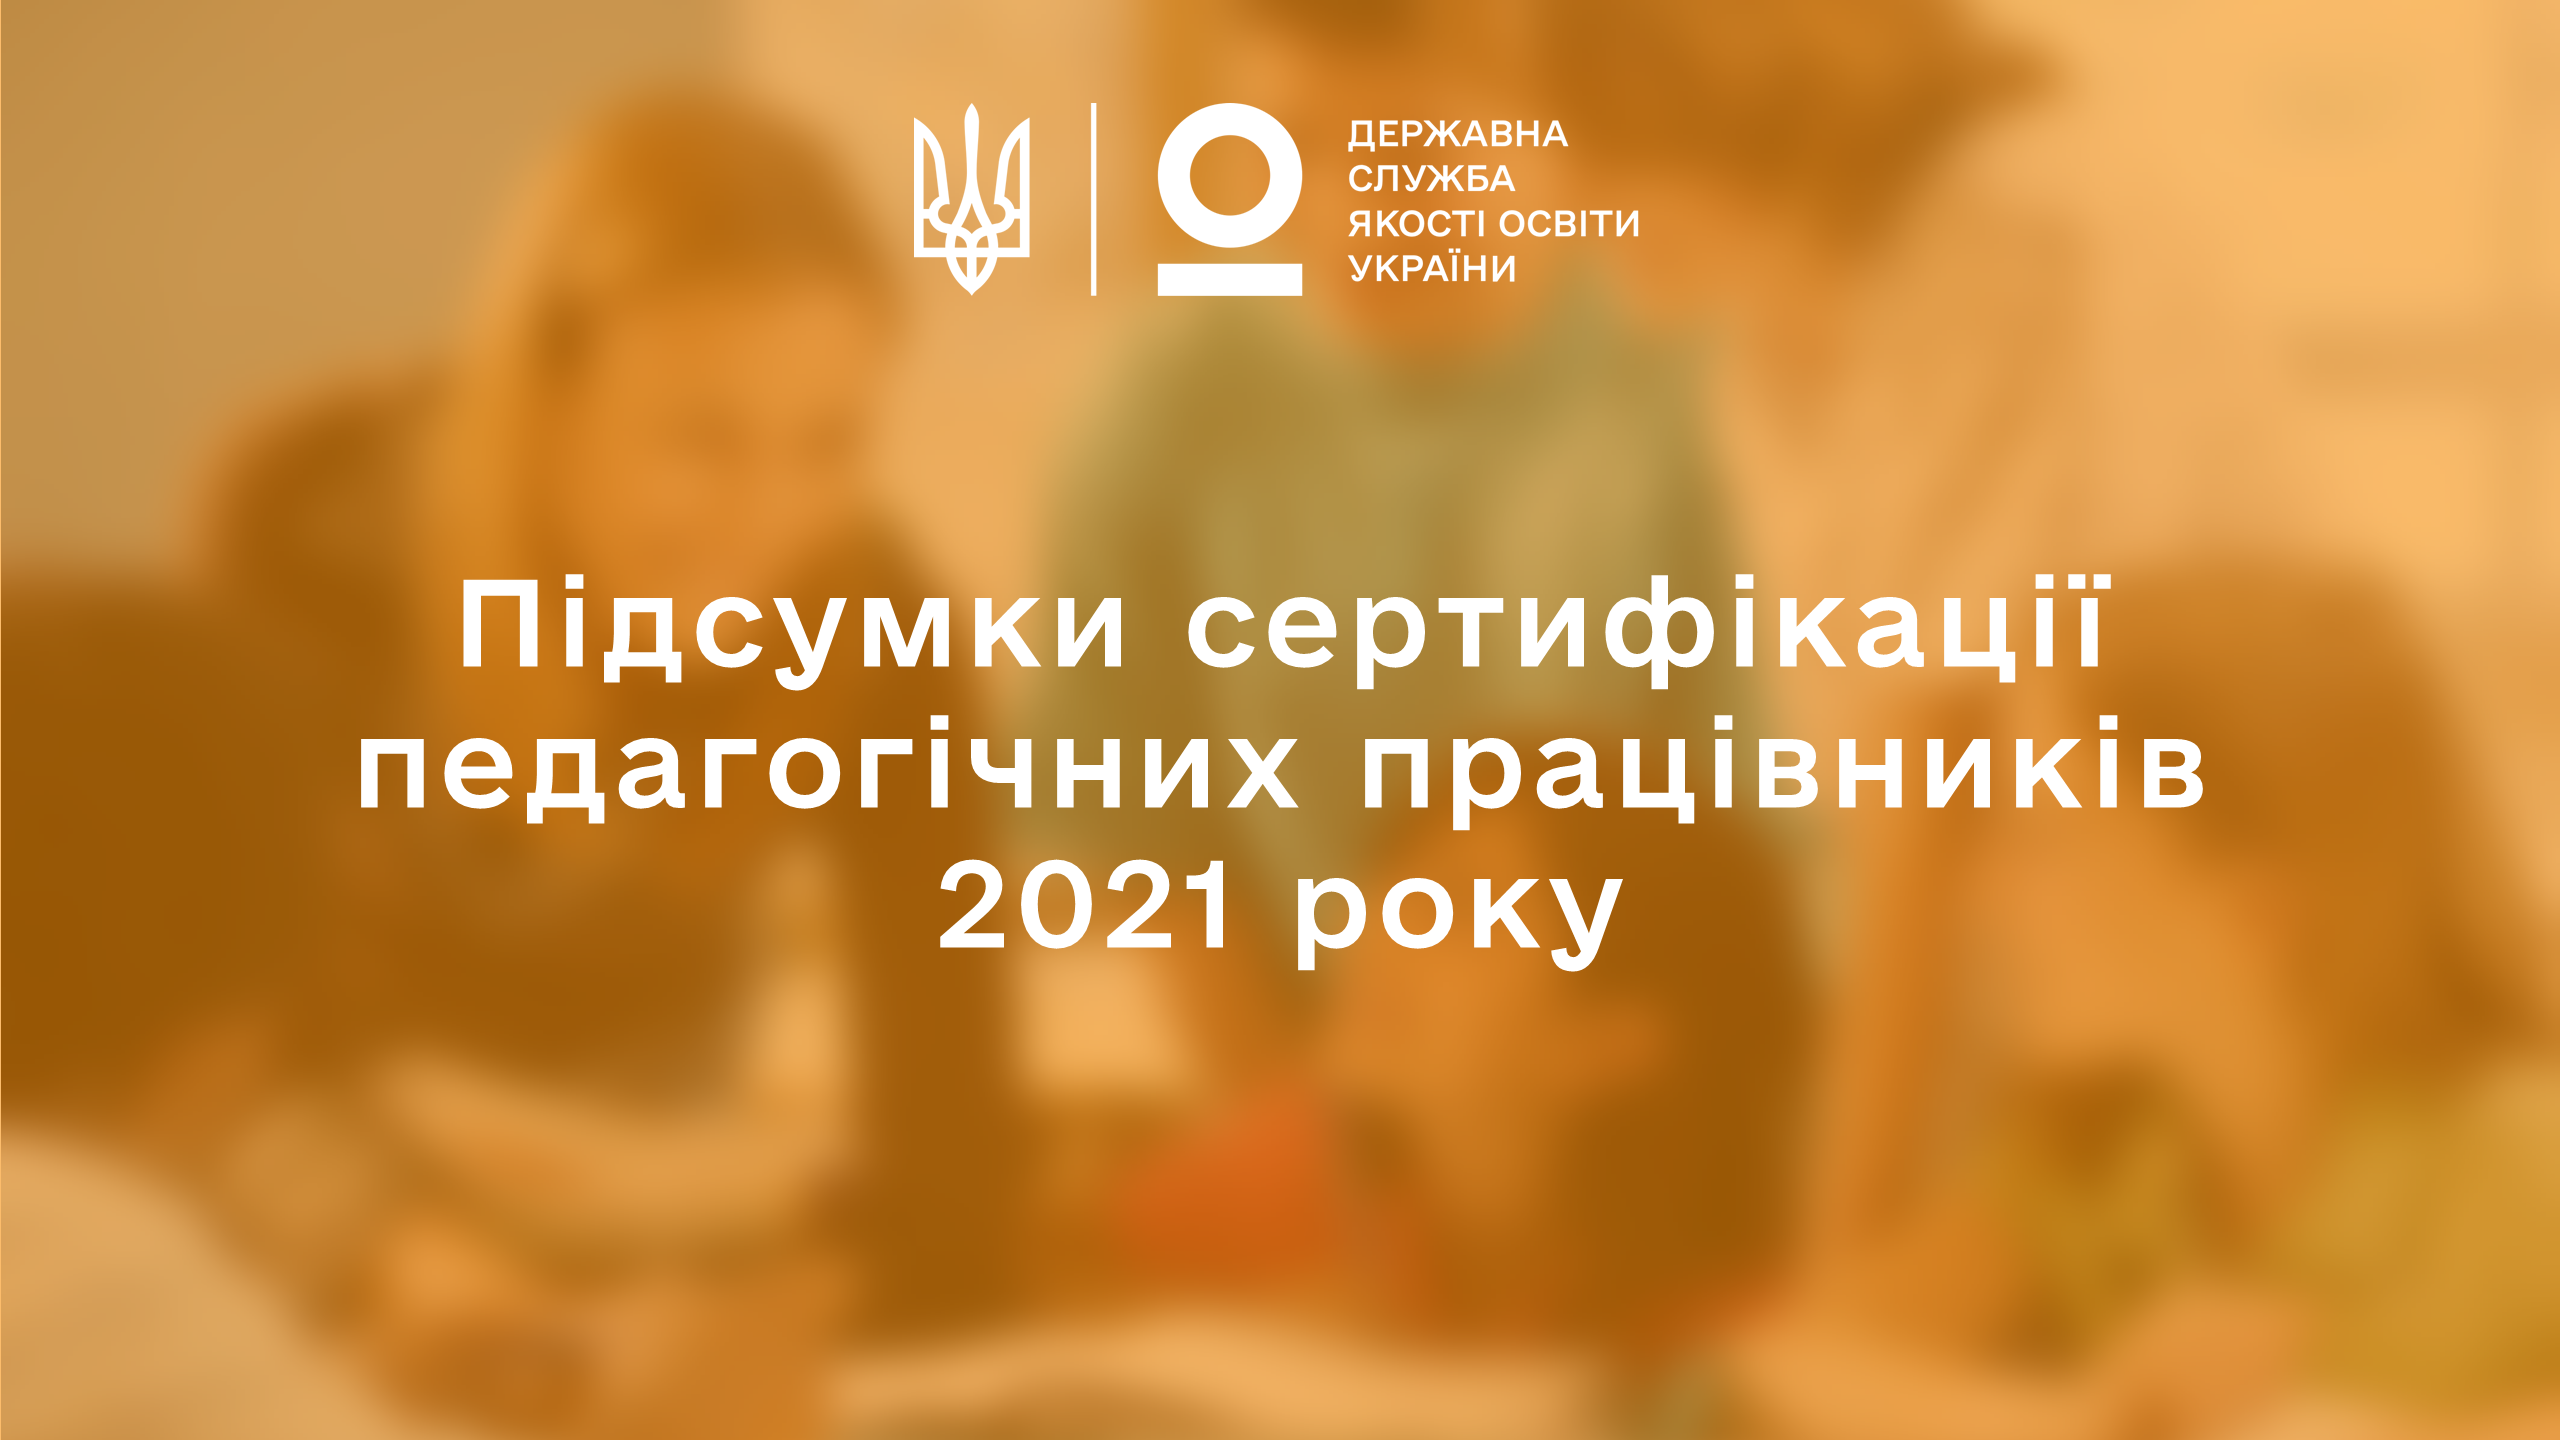 Підсумки сертифікації педагогічних працівників за 2021 рік